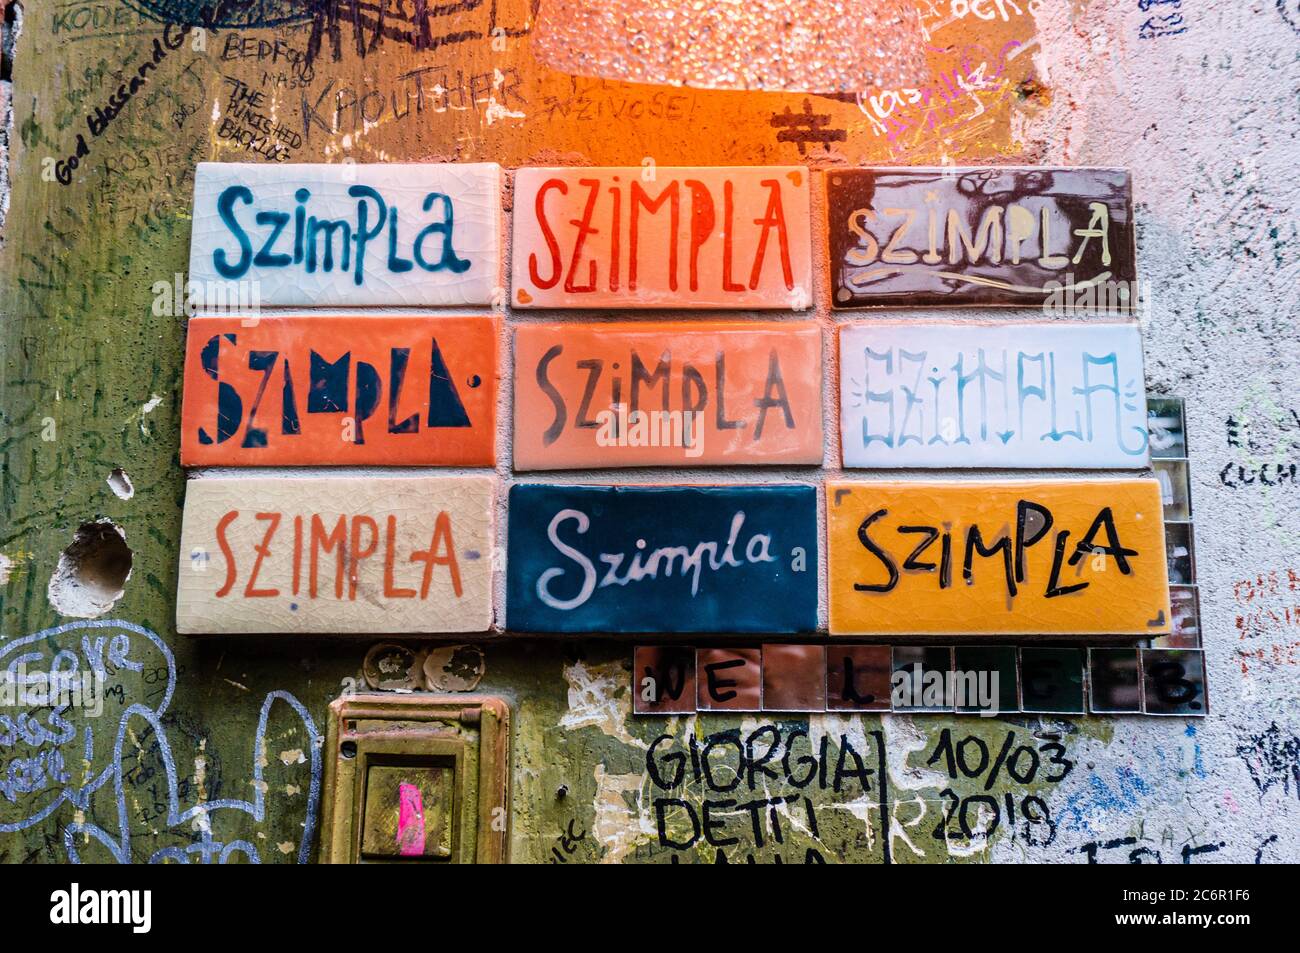 Ungarn, Budapest - 8. August 2018. Schilder mit Wort Szimpl auf bunten Fliesen geschrieben. Ruin Bar Pub romkocsma. Originalität abwechslungsreiche Schriftzüge Graffiti Stockfoto